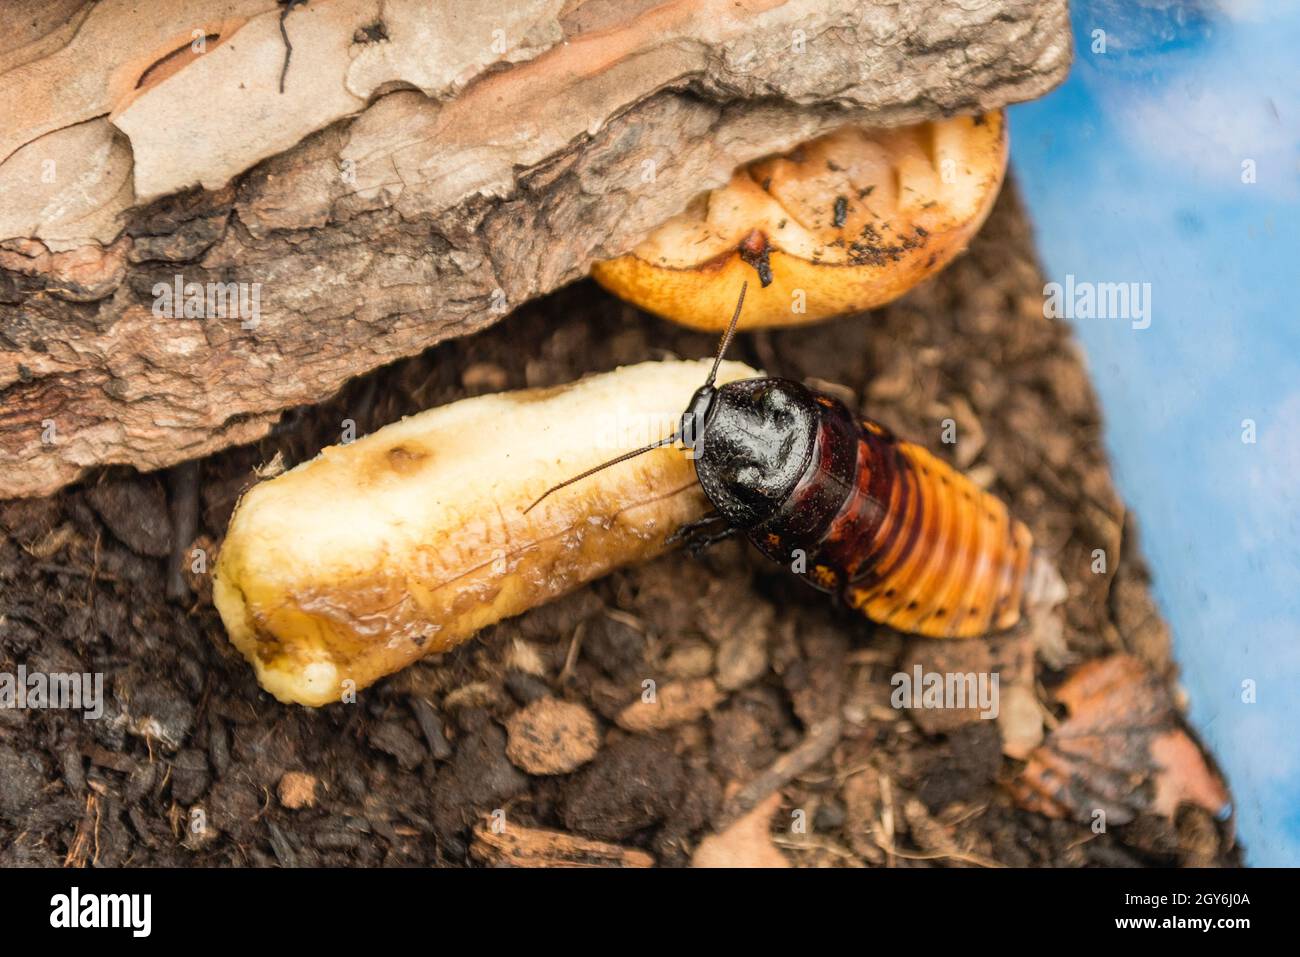 Madagascar scarafaggio sibilante aka Gromphadorina Portentosa mentre mangia una banana. Si tratta di uno dei più grandi specie di scarafaggi Foto Stock